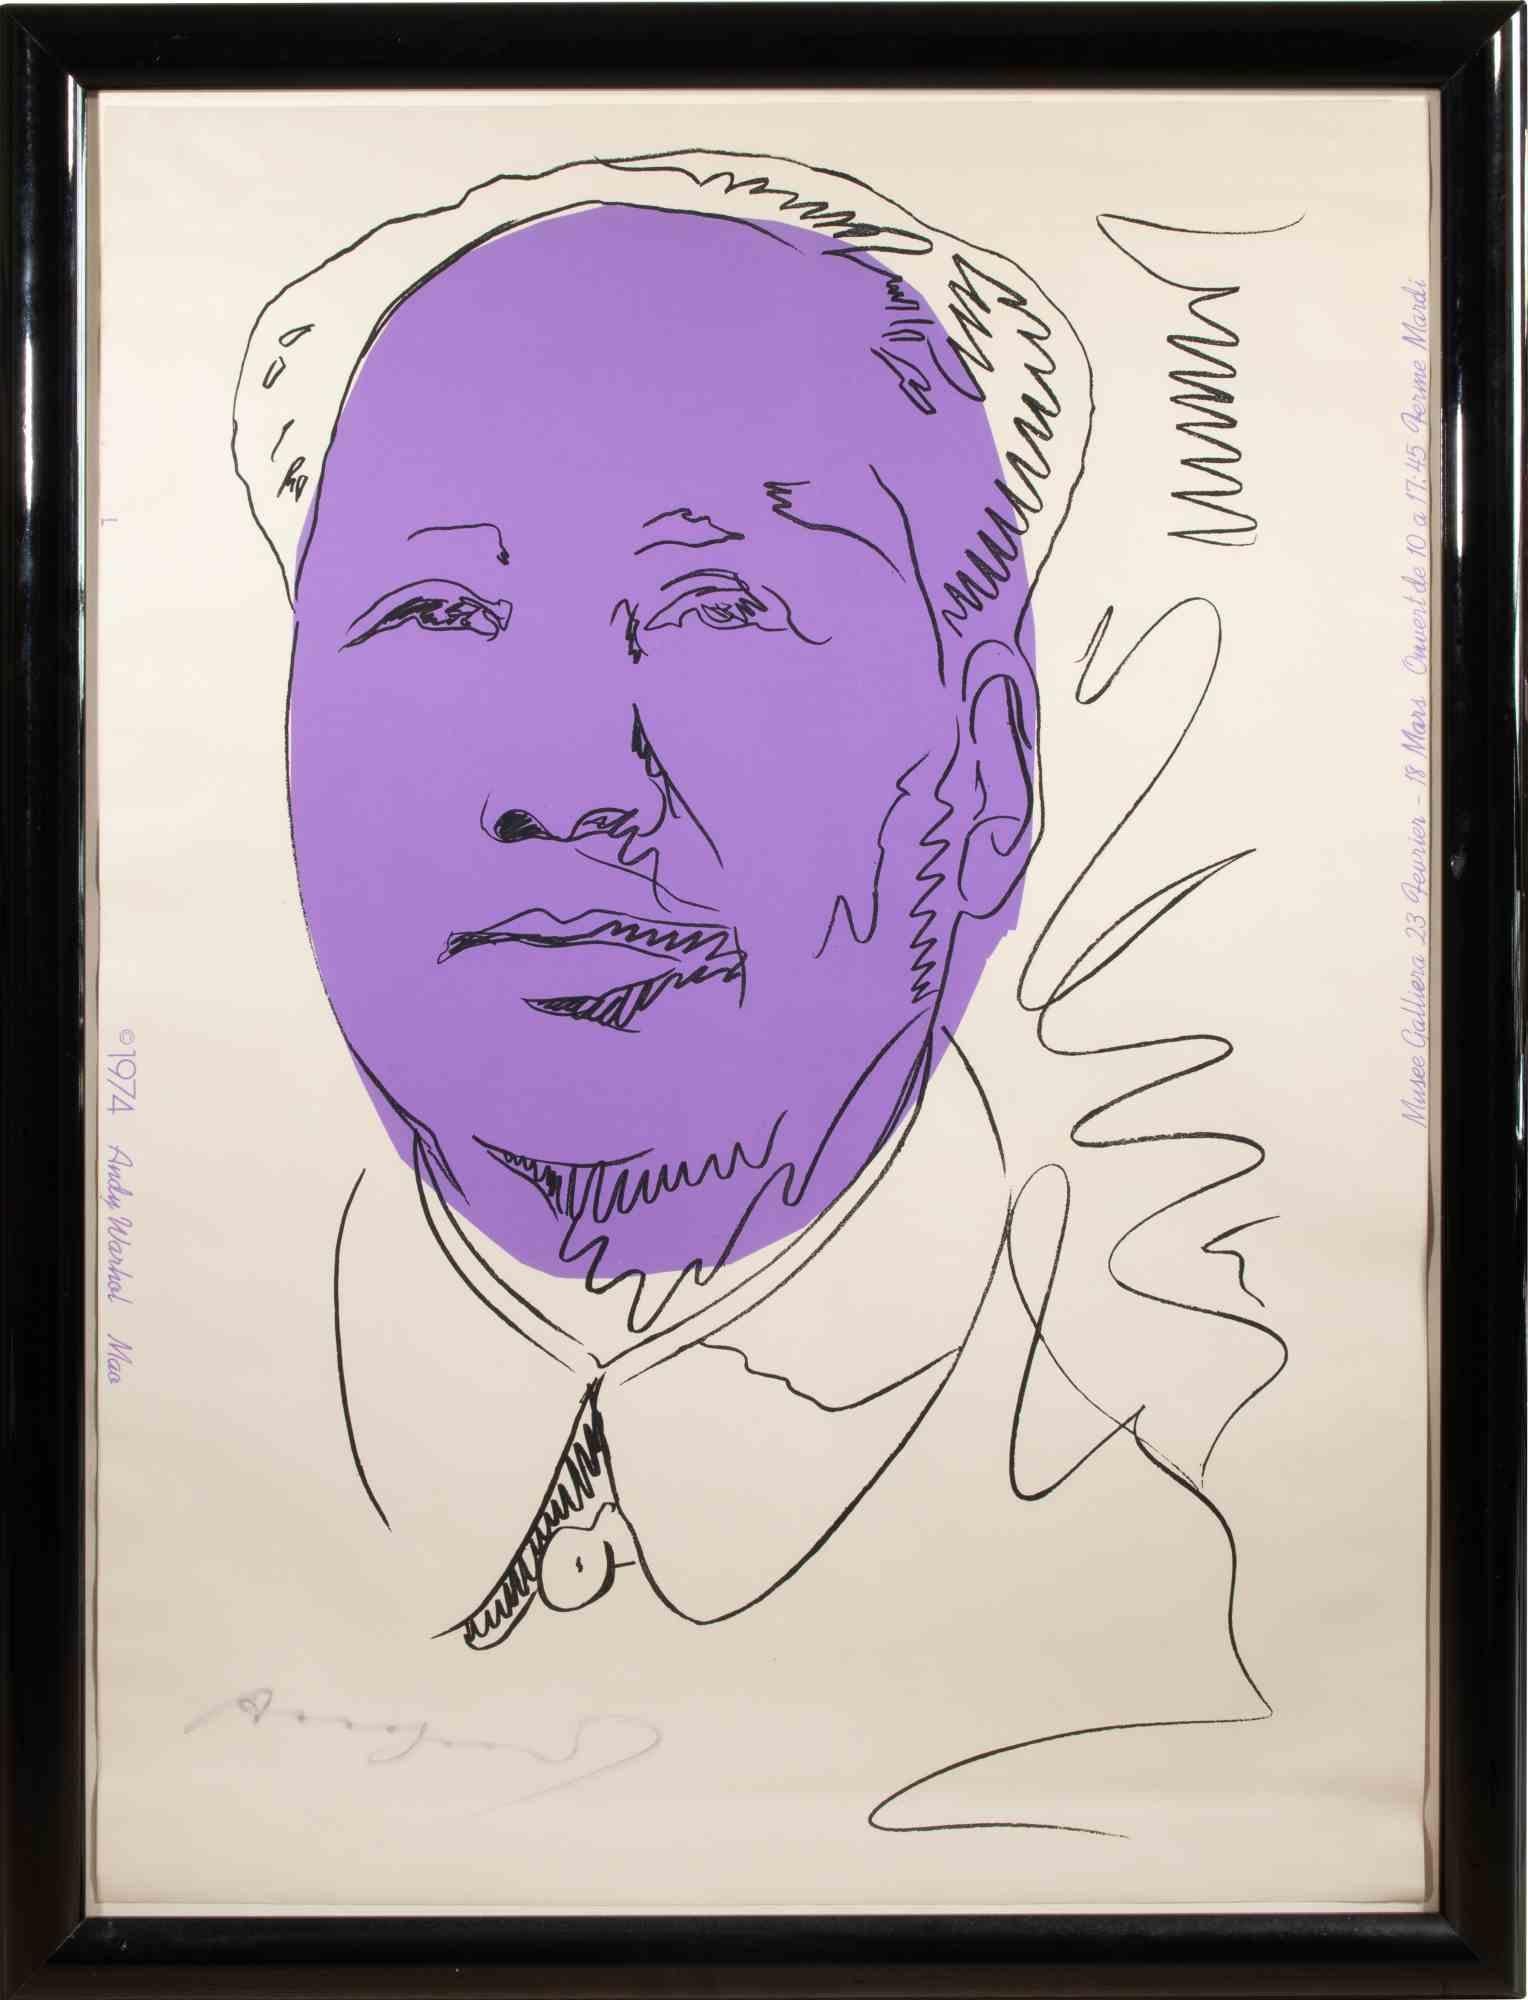 Mao est une œuvre d'art contemporain réalisée par Andy Warhol en 1974.

Sérigraphie couleur sur papier peint.

Cadre inclus : 113 x 86 x 3 cm

Signé à la main en bas à gauche.

Prov. Galerie Vayhinger, Radolfzell (dos du cadre avec étiquette